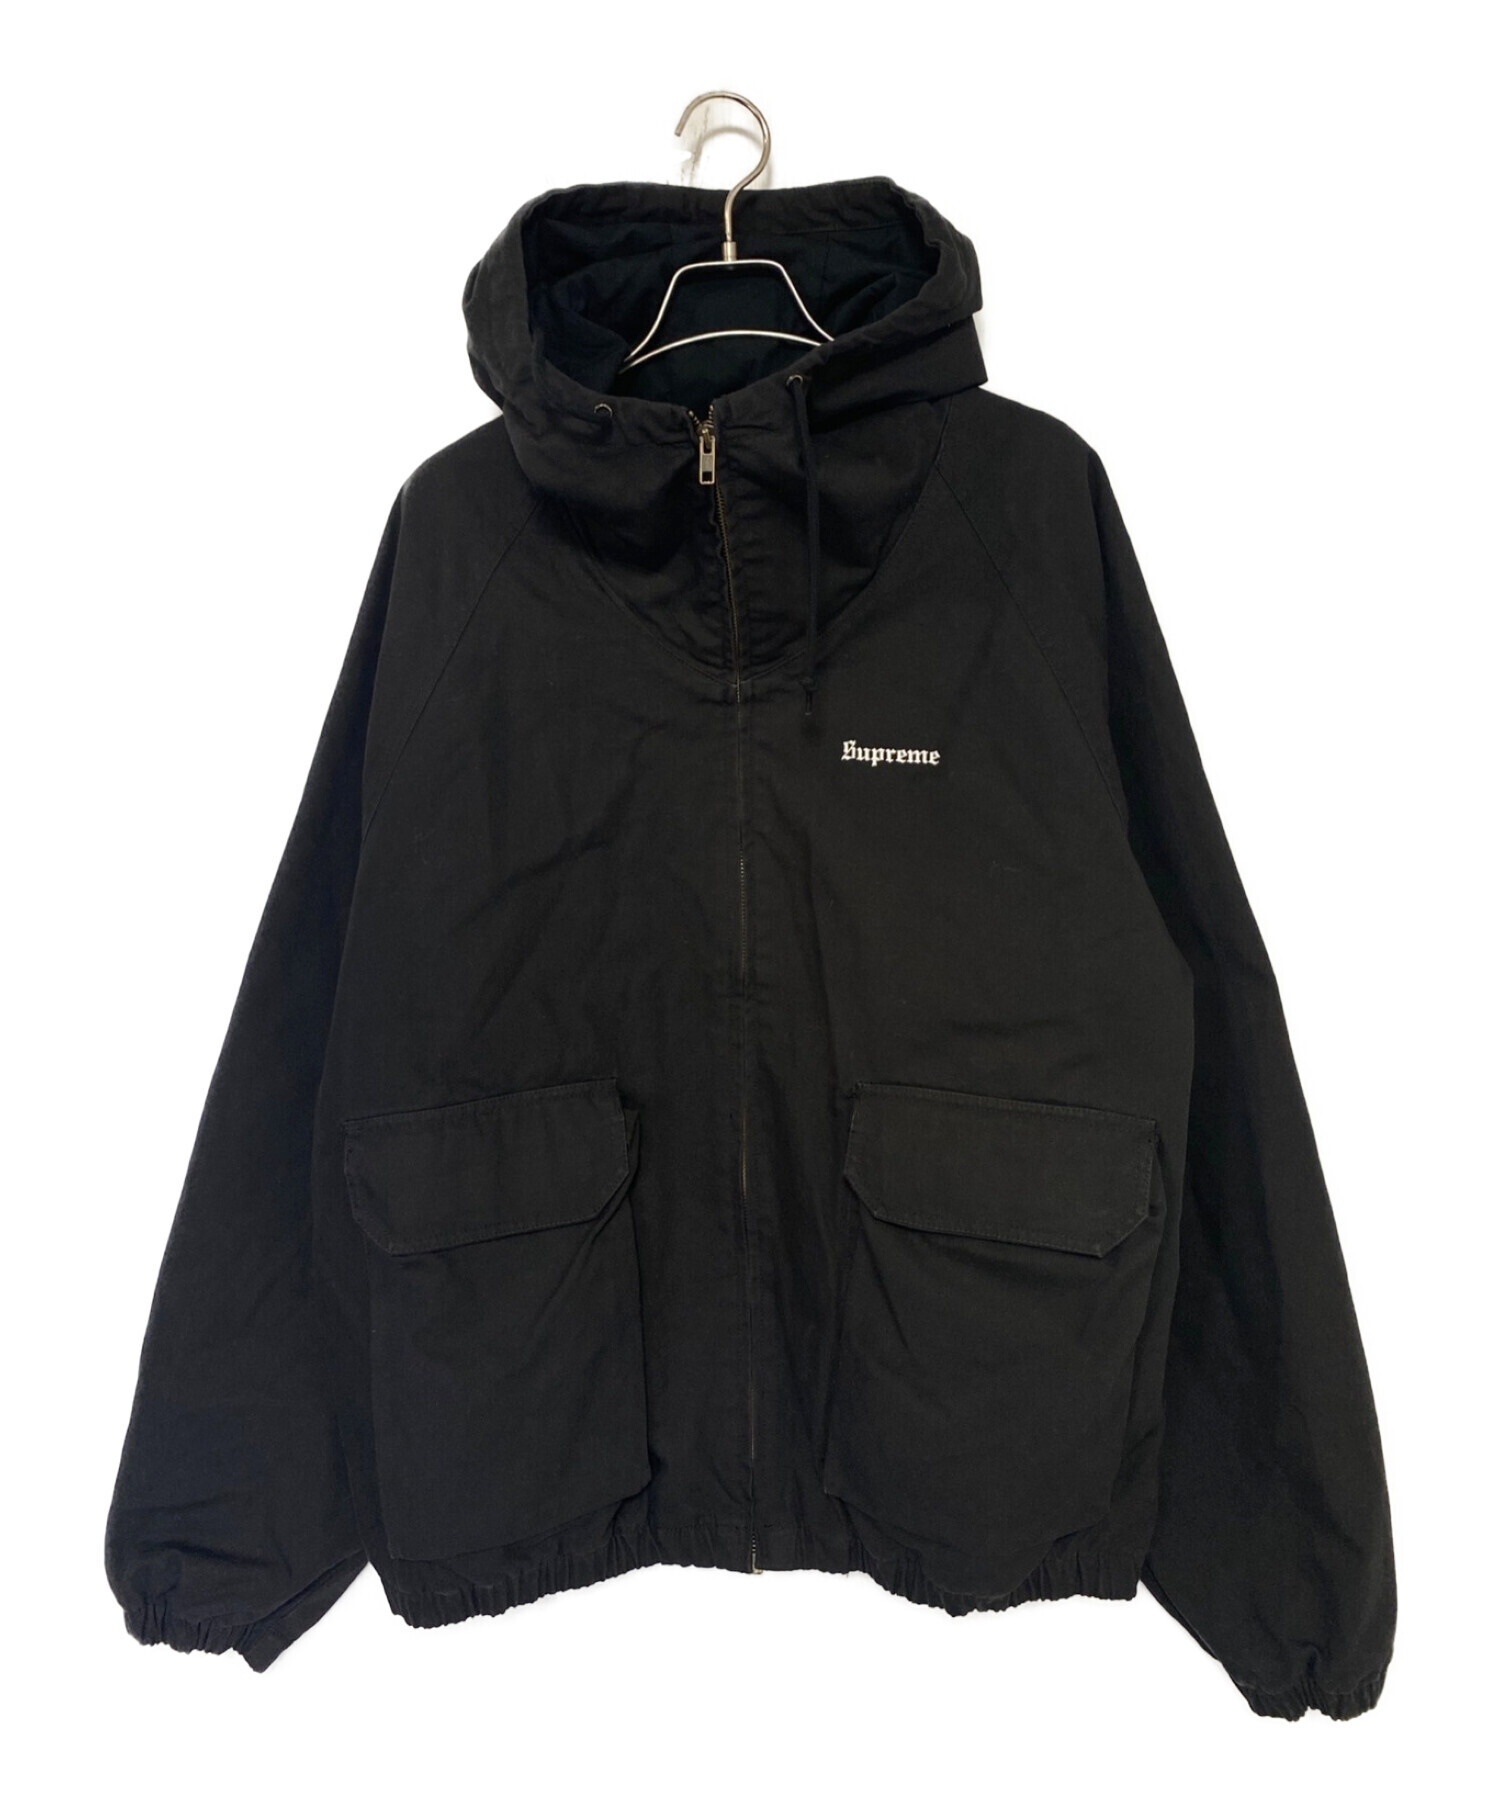 10,000円supreme jacket L